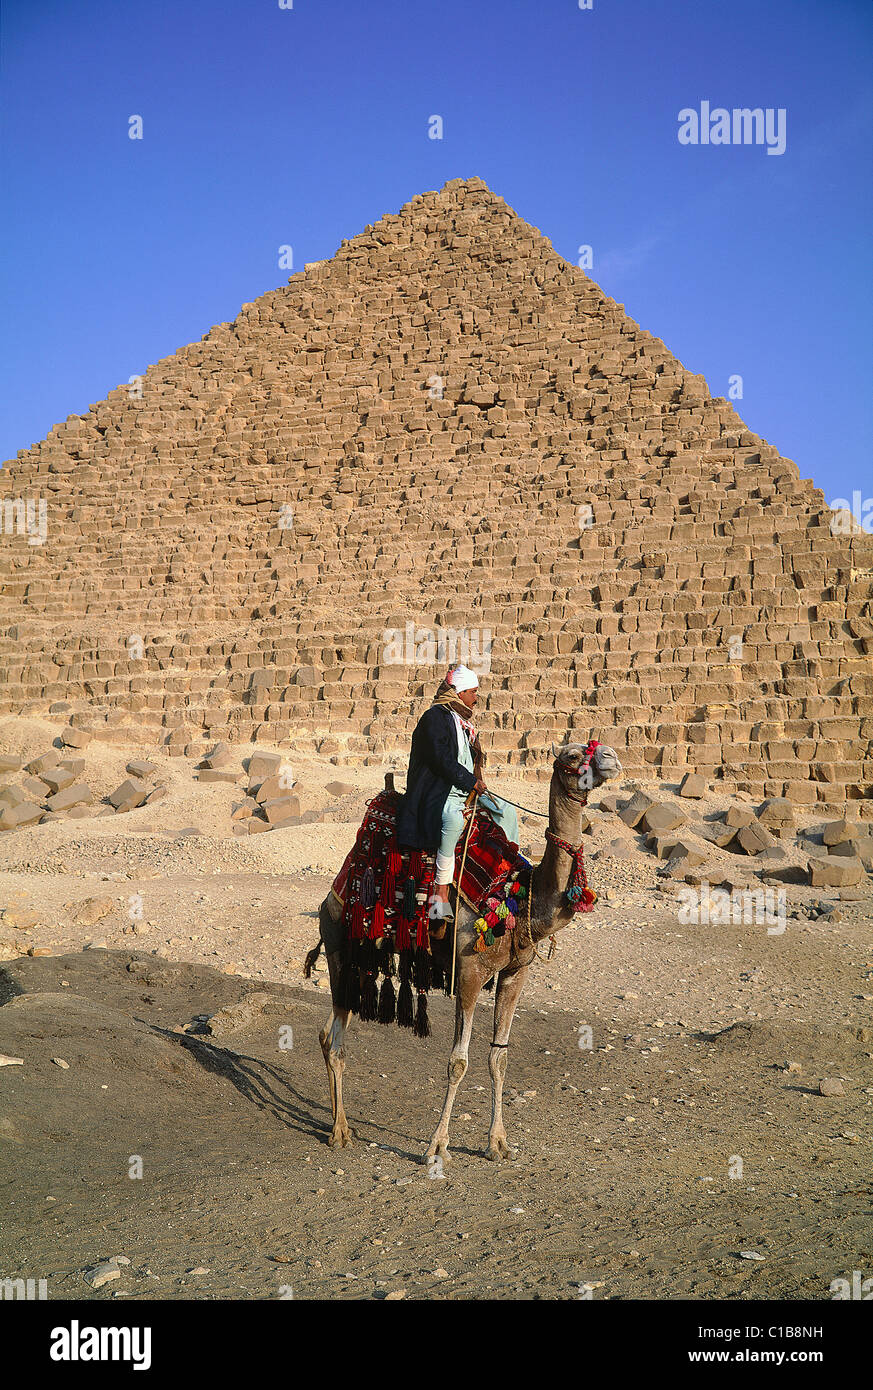 Egypt, Cairo, Giza, camel driver at Keops pyramid foot Stock Photo